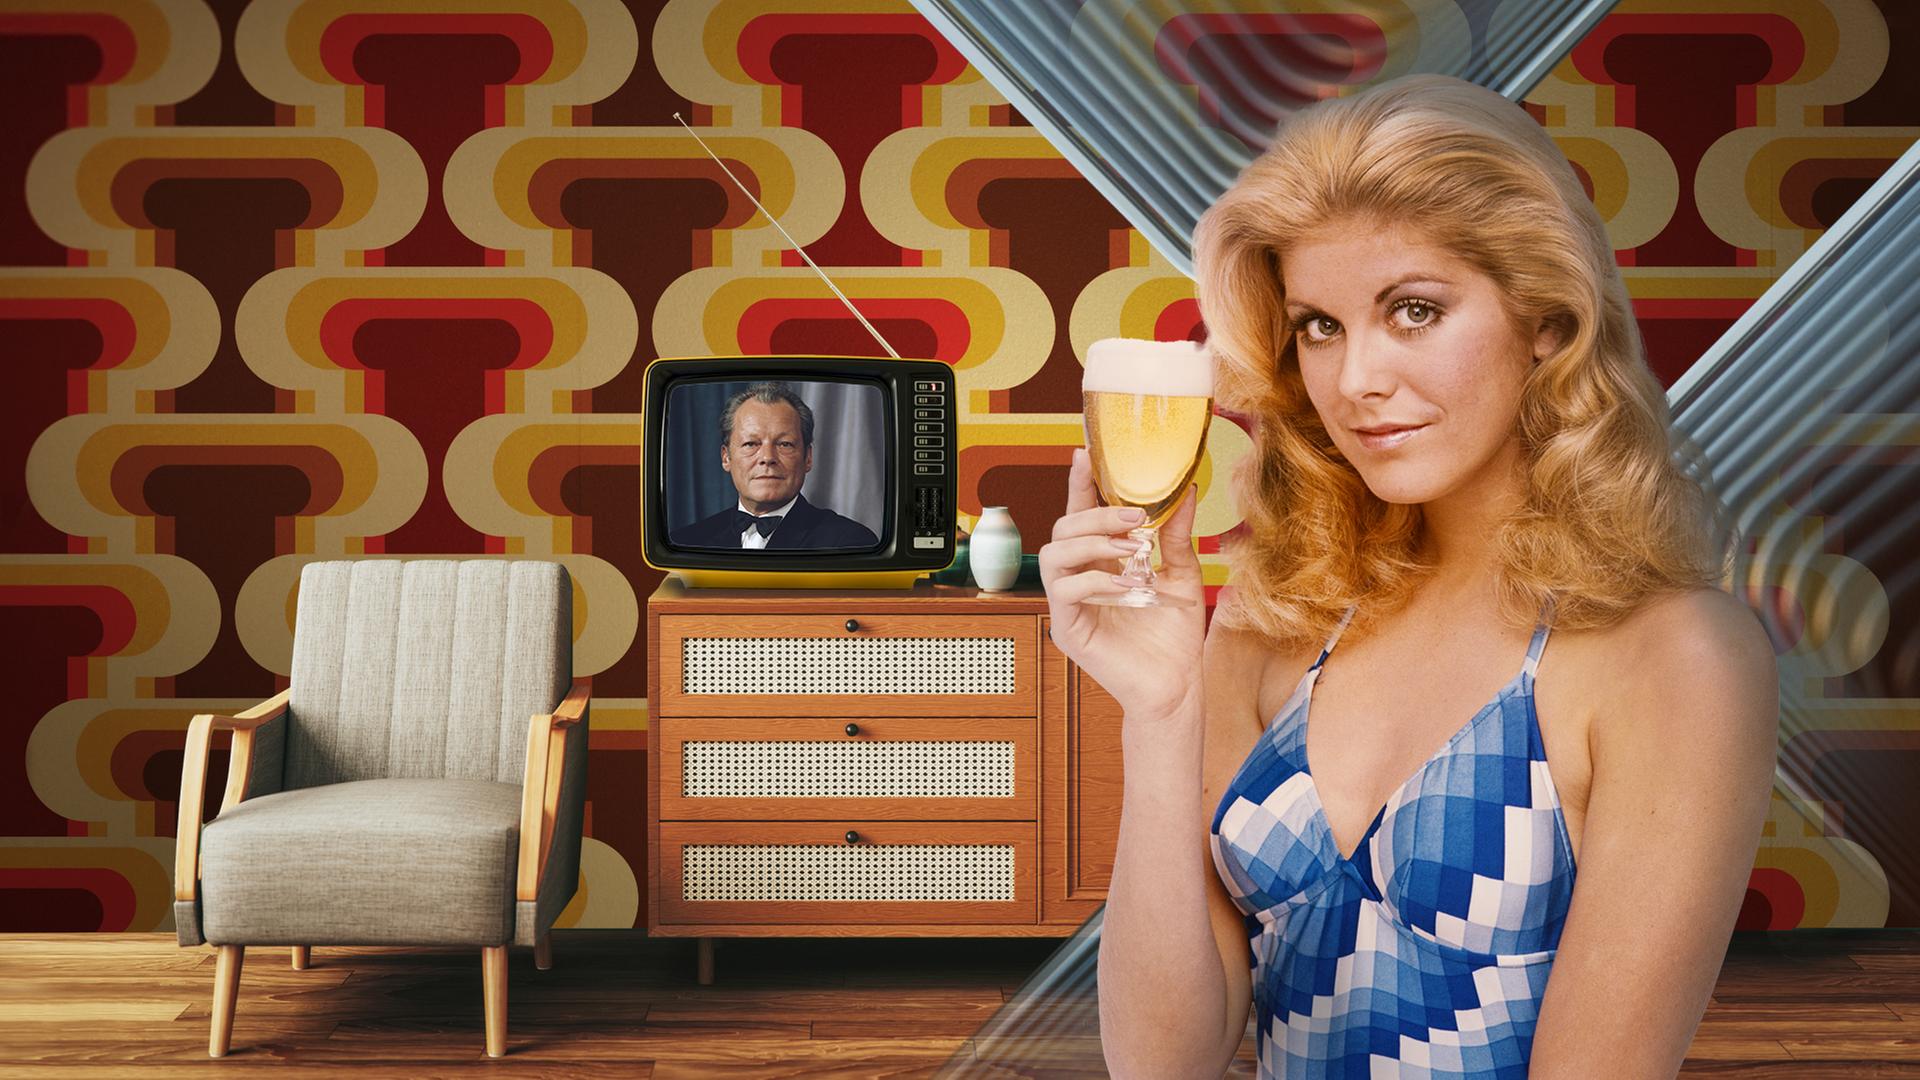 Collage mit Retro-Tapete im Hintergrund,  ein Model in für die 70er-Jahre typischer Kleidung, Willy Brandt im Hintergrund auf dem Bildschirm eines Fernsehers aus der damaligen Zeit.